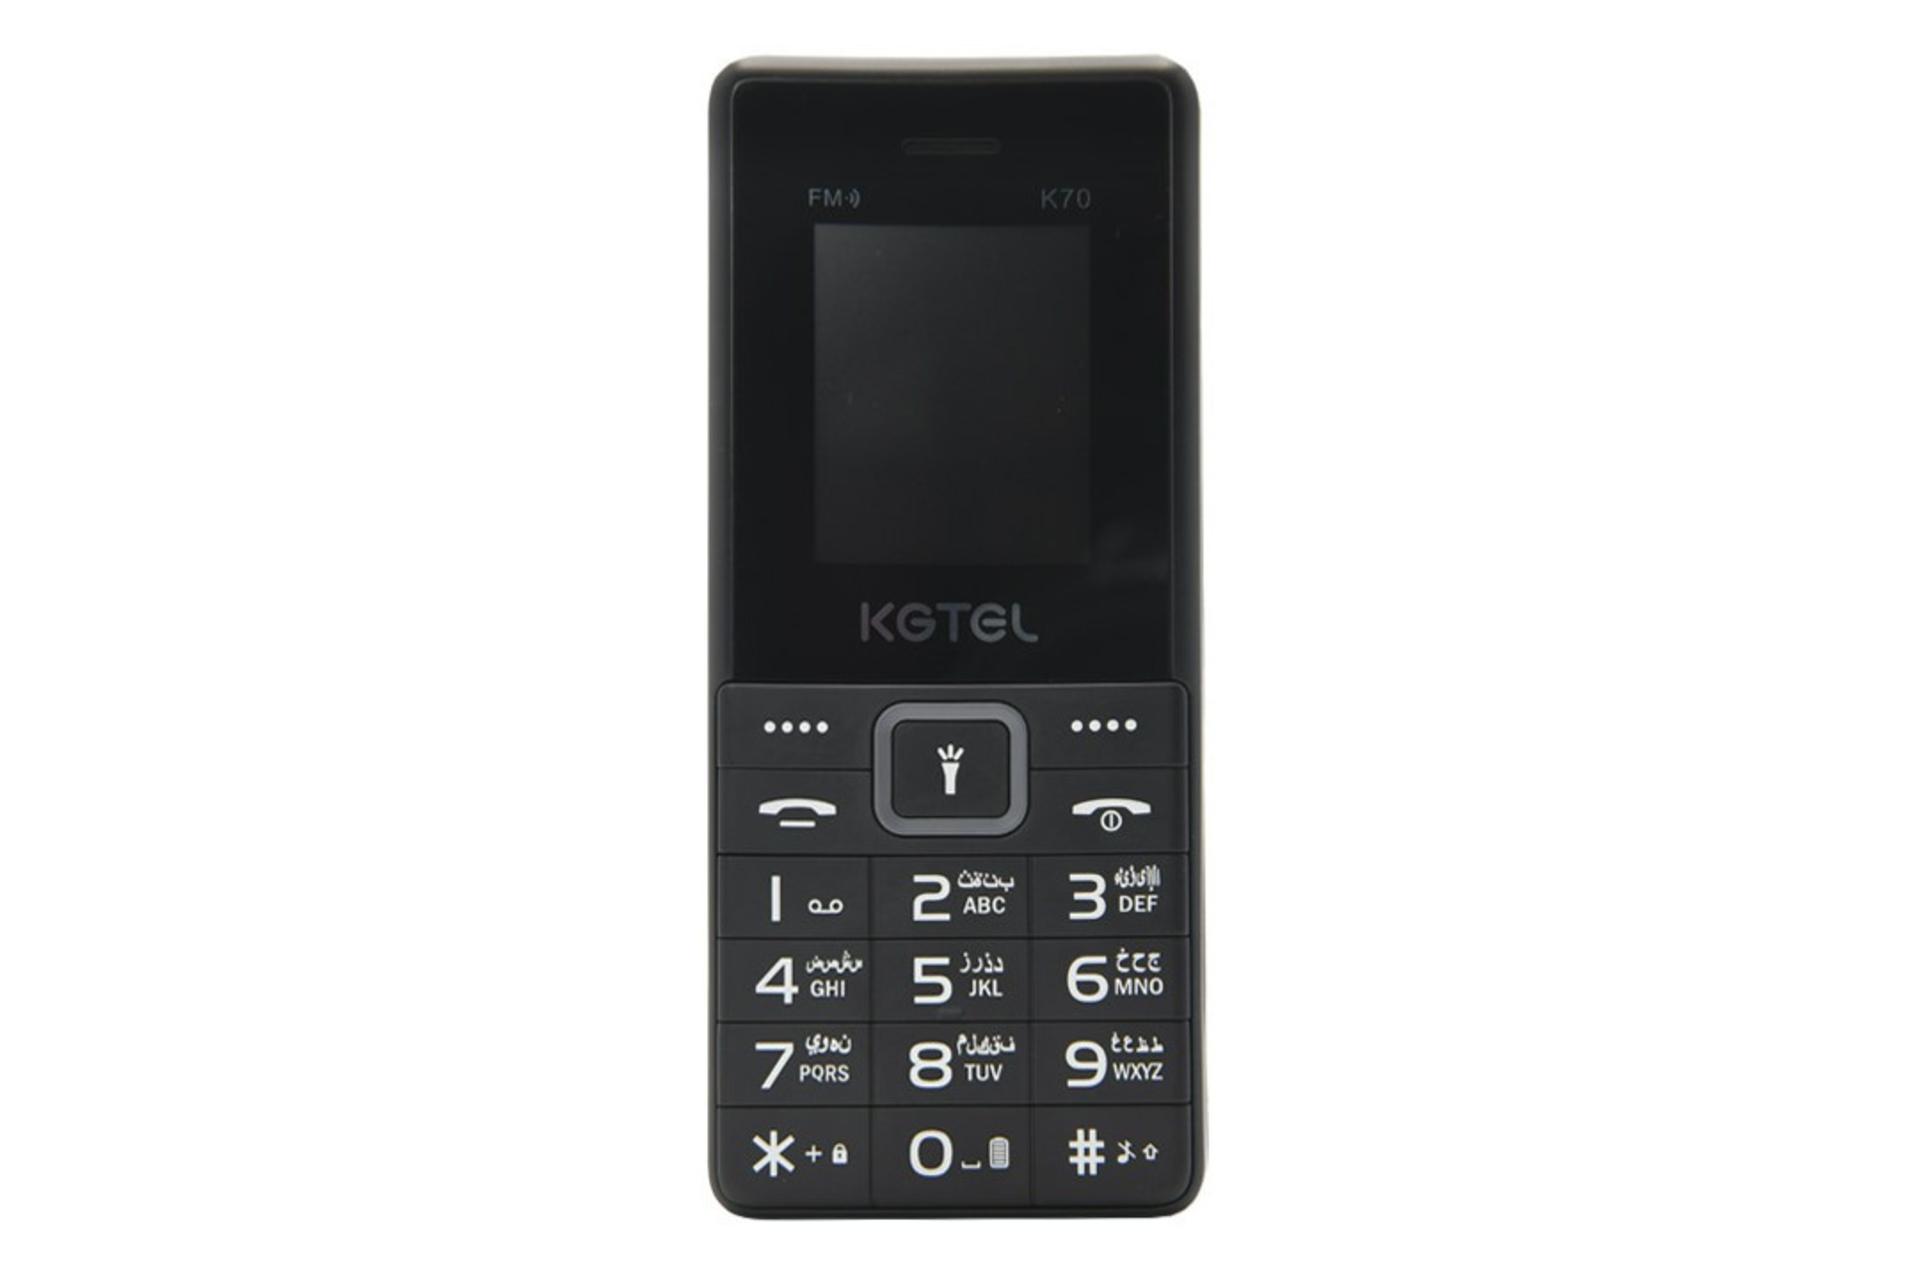 گوشی موبایل کاجیتل KGTEL K70